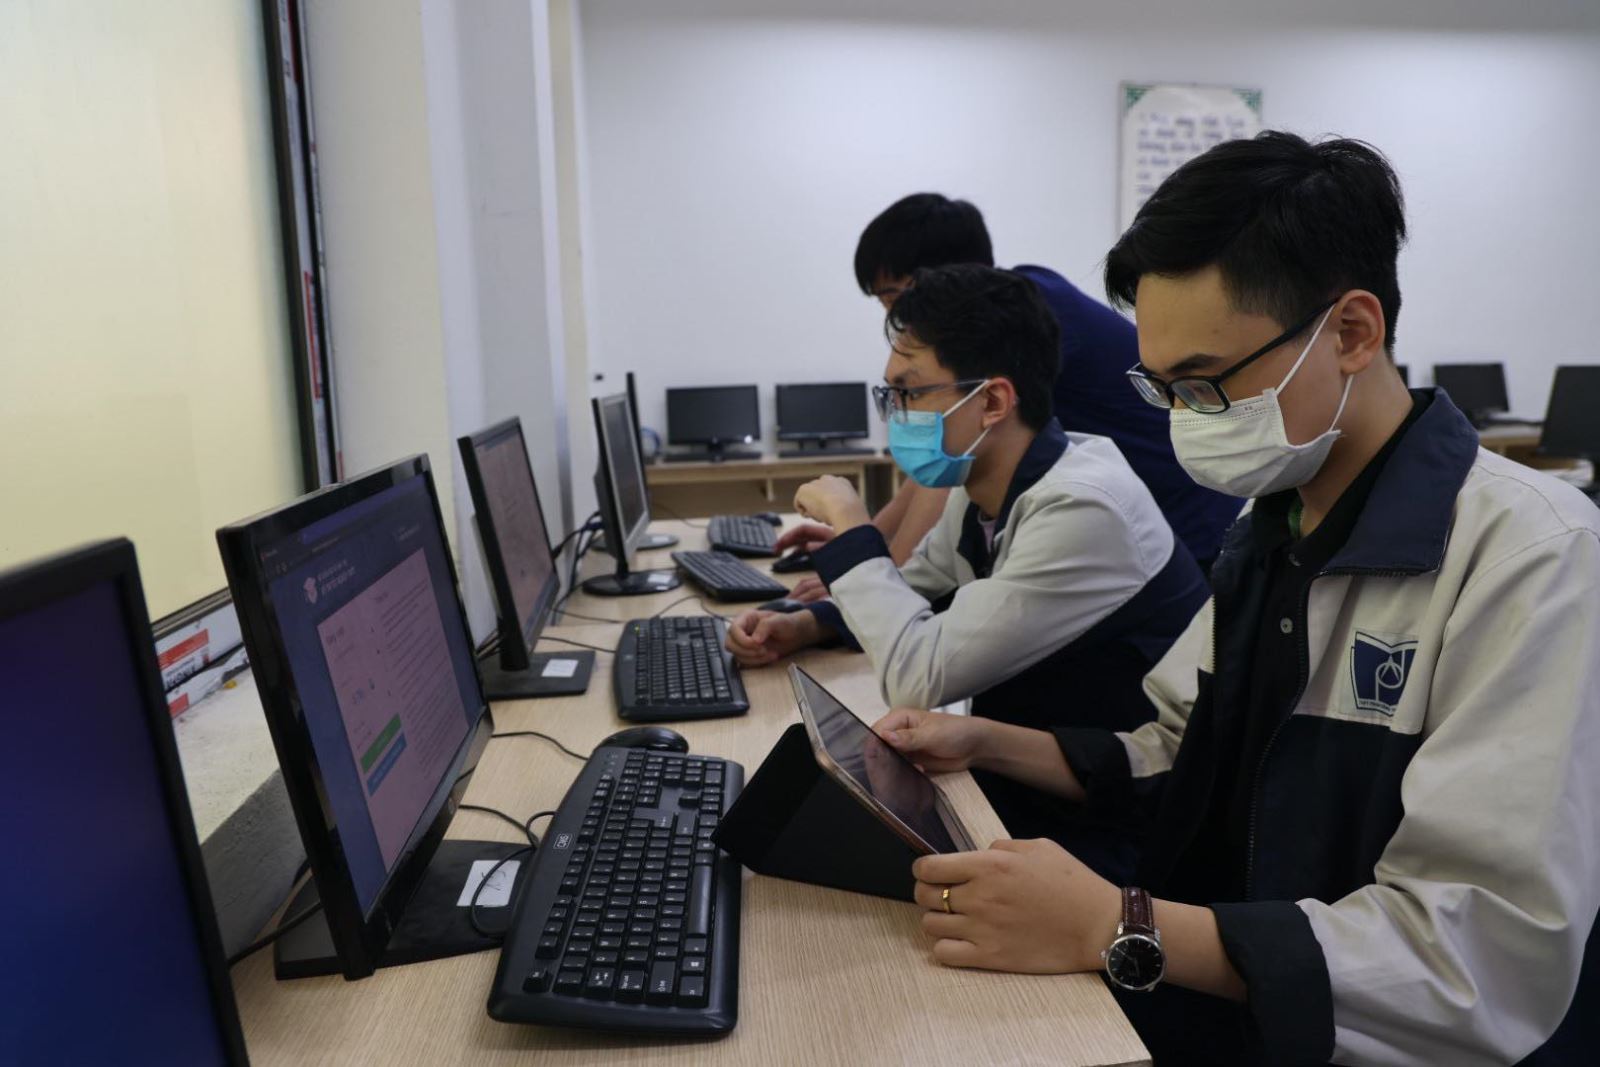 Học sinh Trường THPT Phan Đình Phùng (Hà Nội) đăng ký dự thi trên hệ thống quản lý thi của Bộ GD&ĐT năm 2022. Ảnh:Báo Tin tức